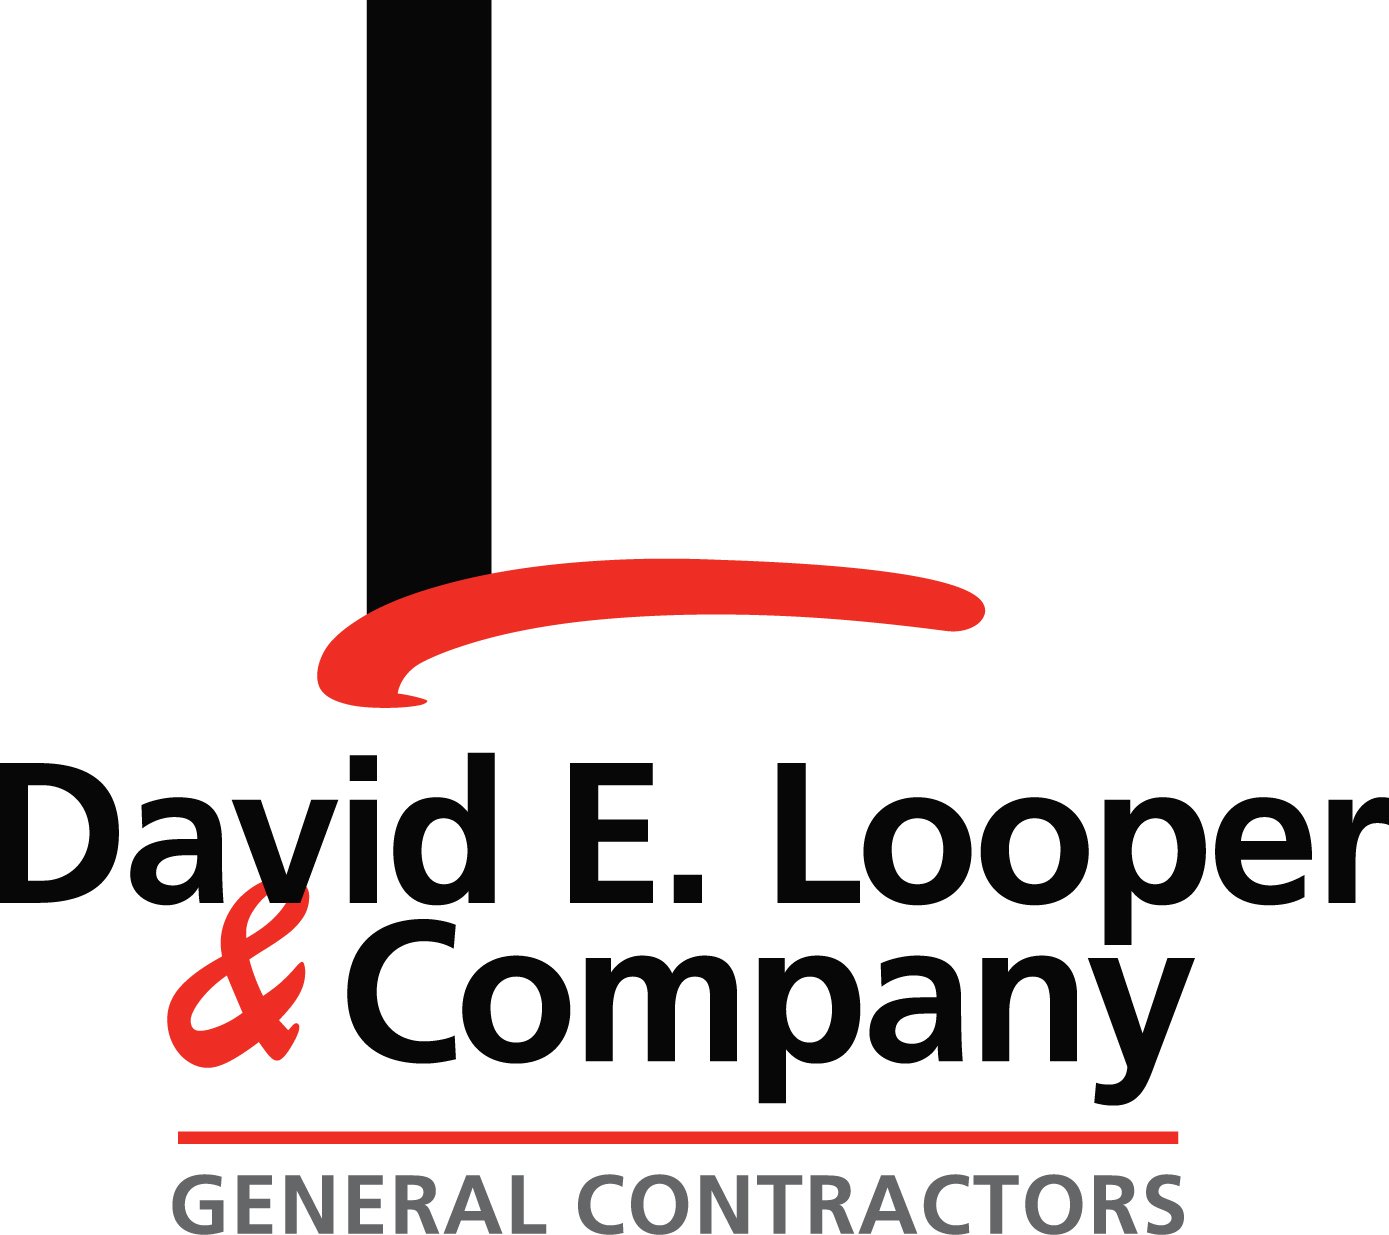 David E. Looper & Company